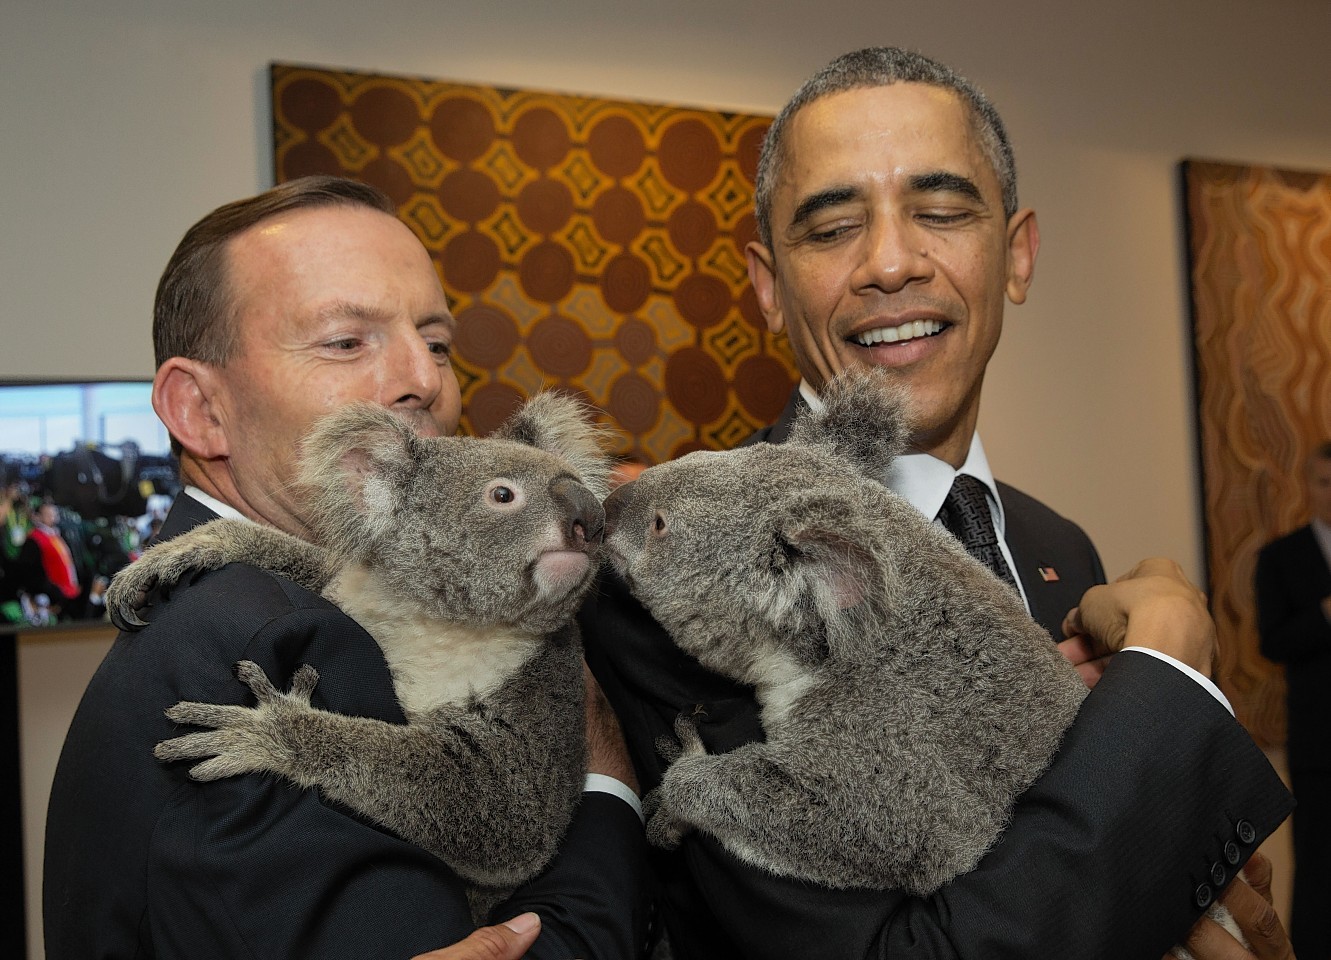 Koala gives world leaders friendly greeting at G-20 summit